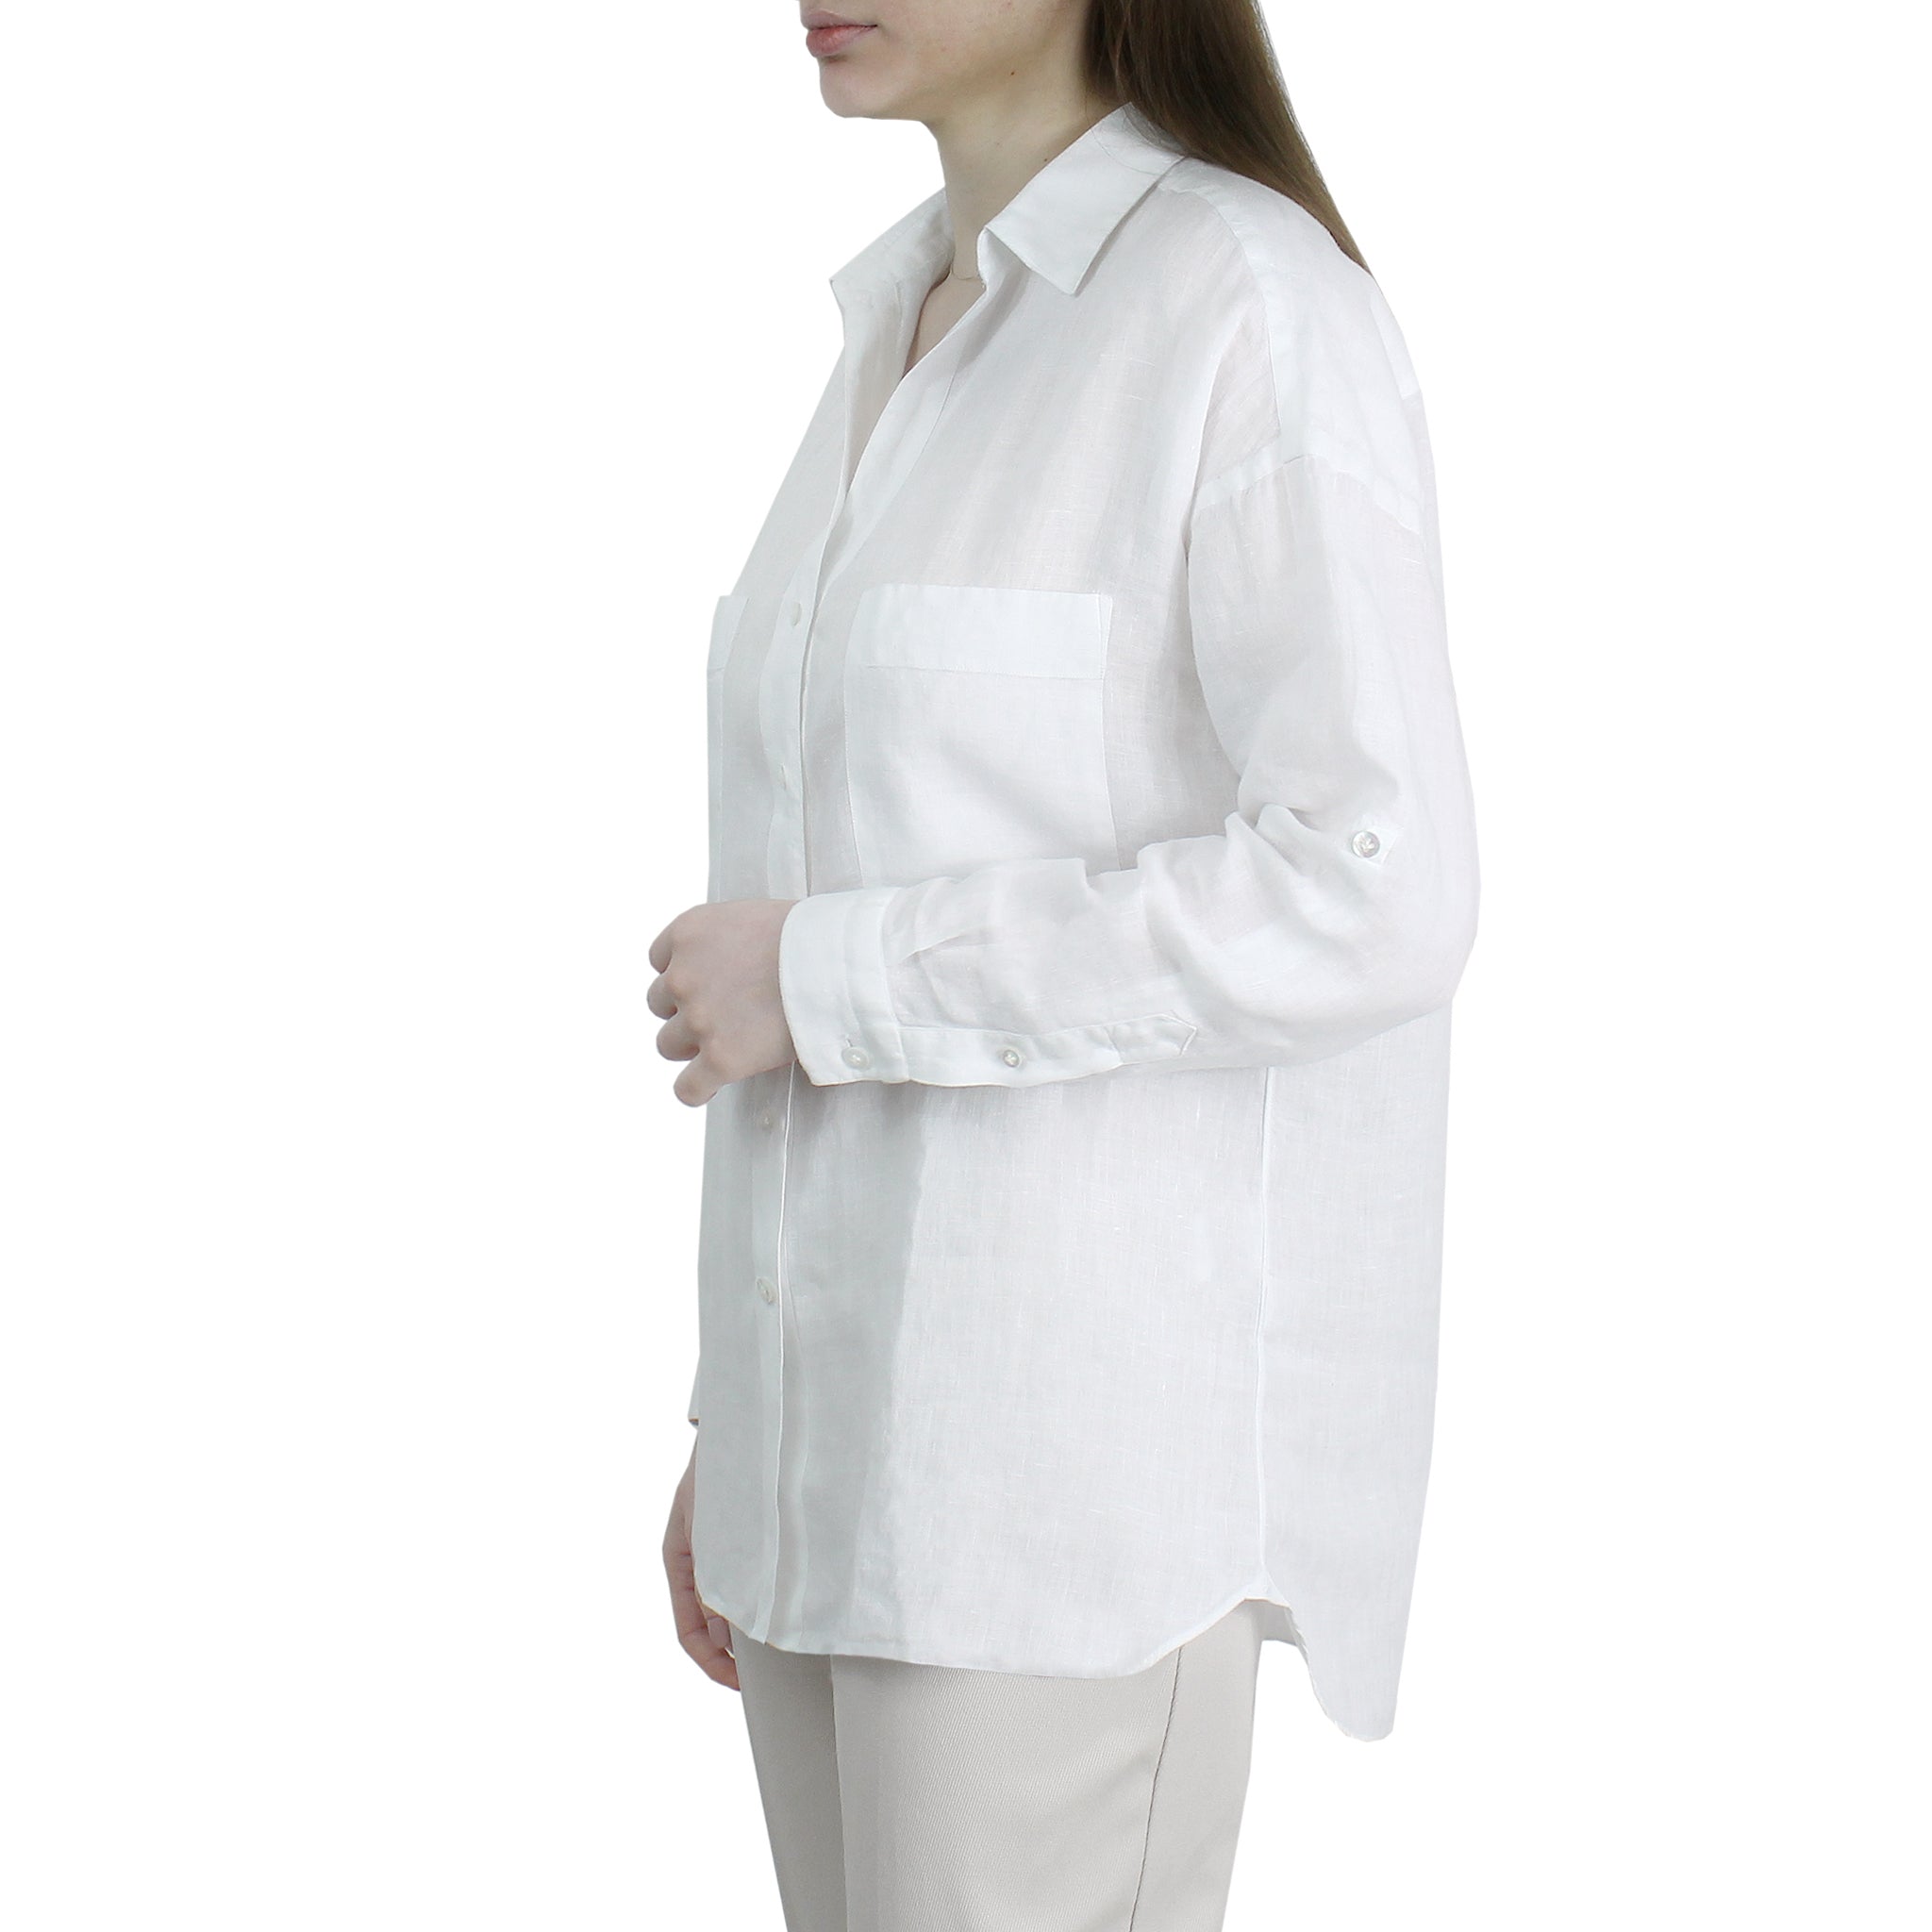 Camicia bianca in lino con tasche e fettuccia per regolare la manica